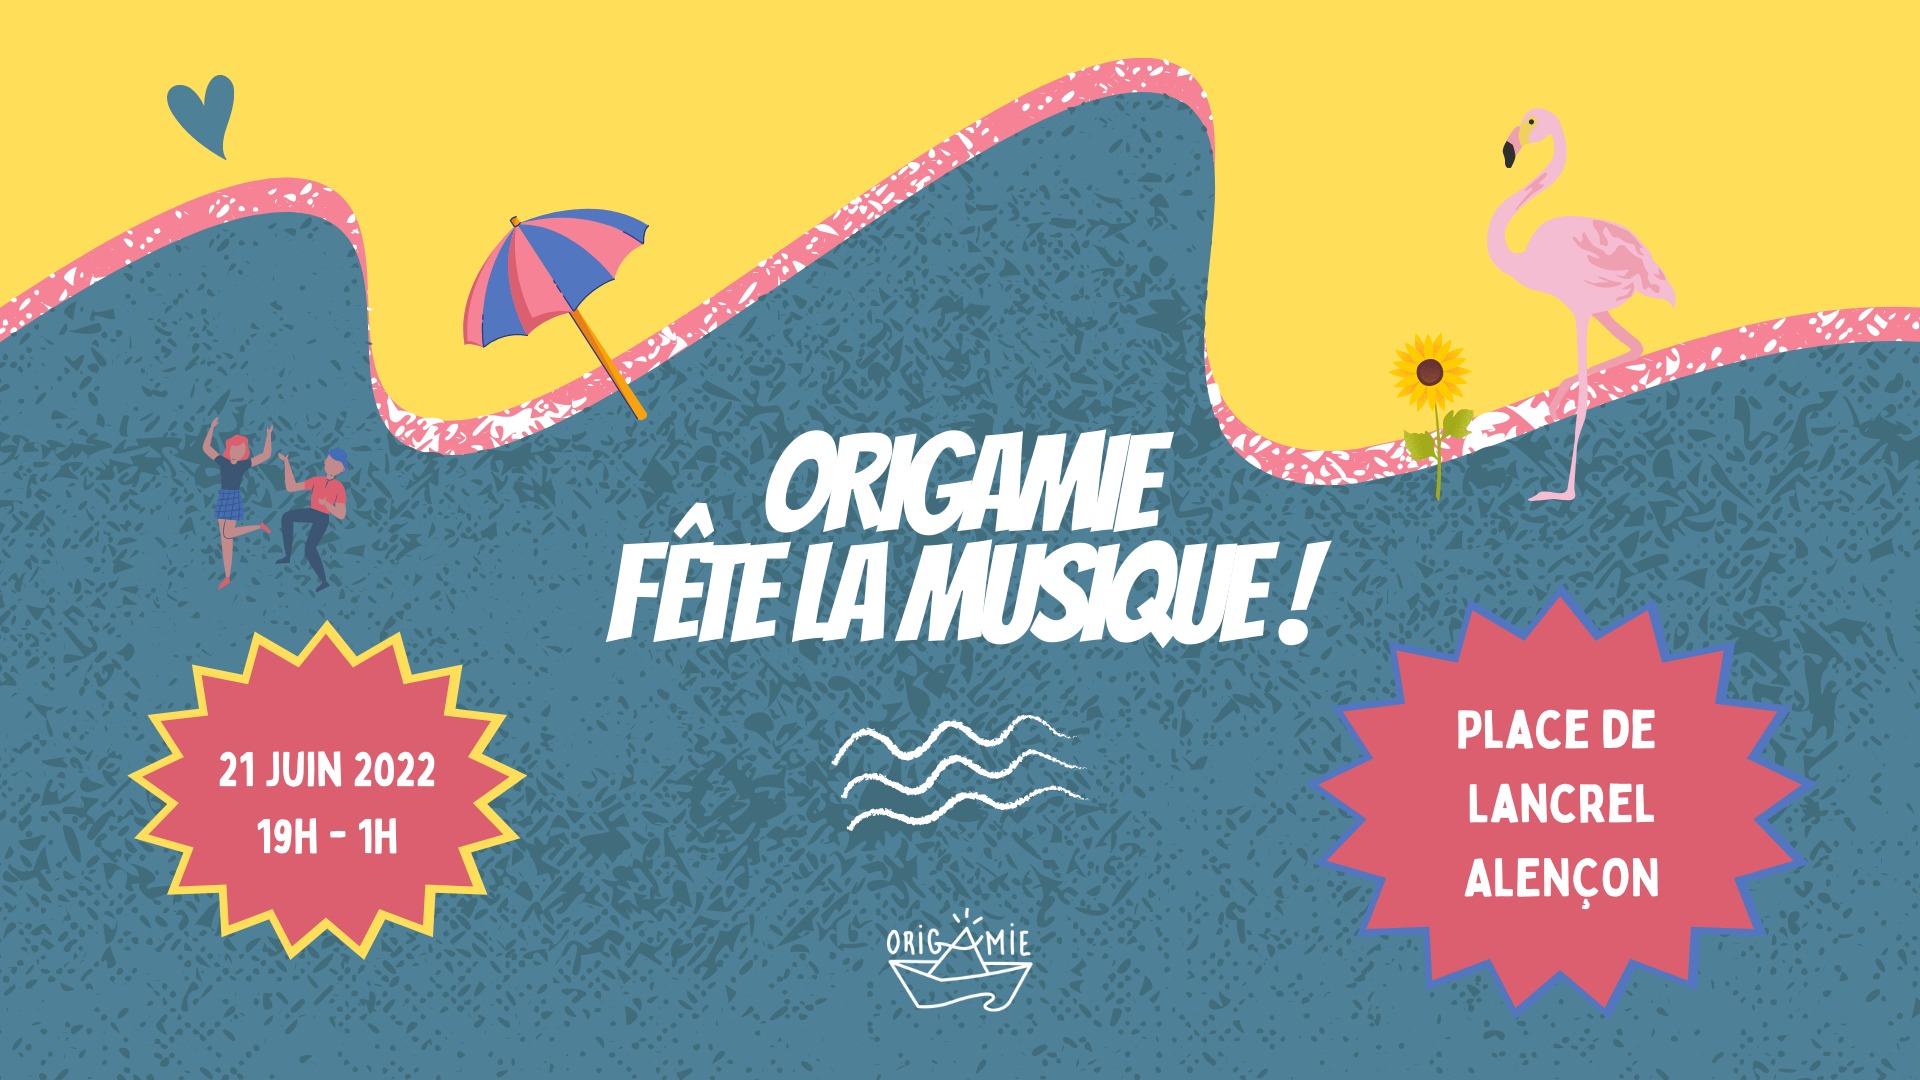 image from [Evènement] Origamie fête la musique !